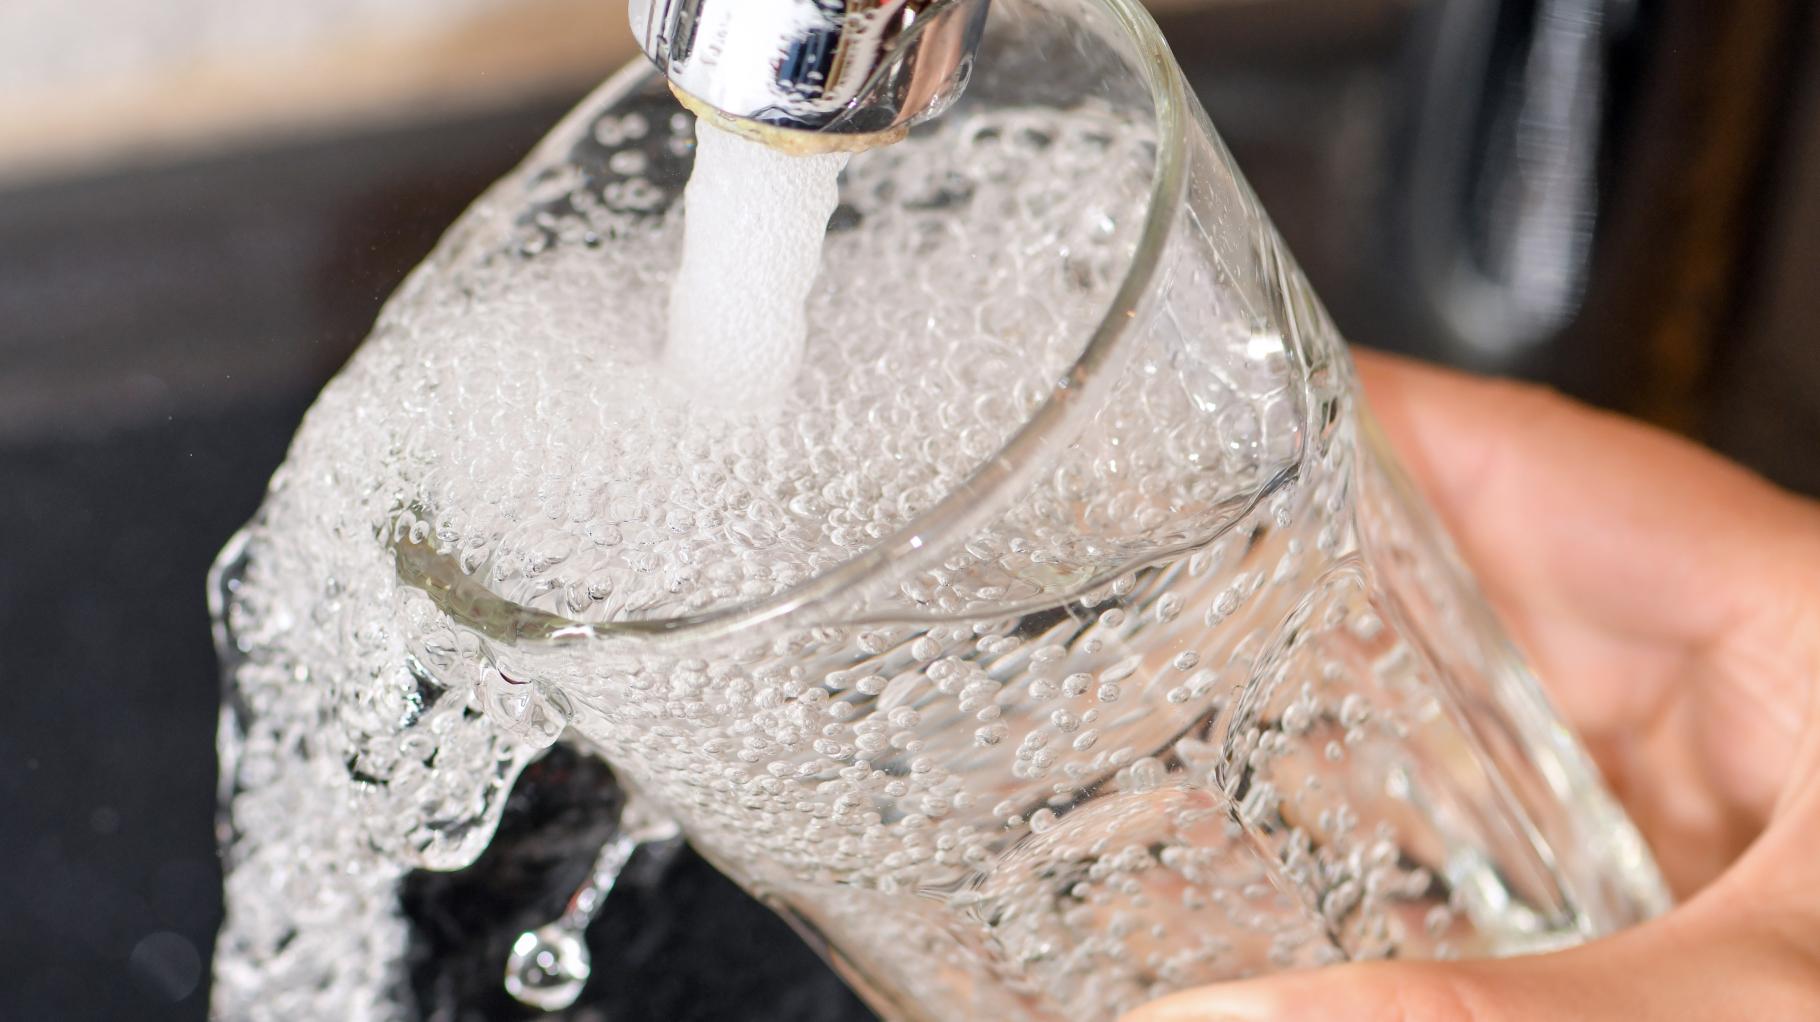 Rostocker verbrauchen bewusst weniger Trinkwasser